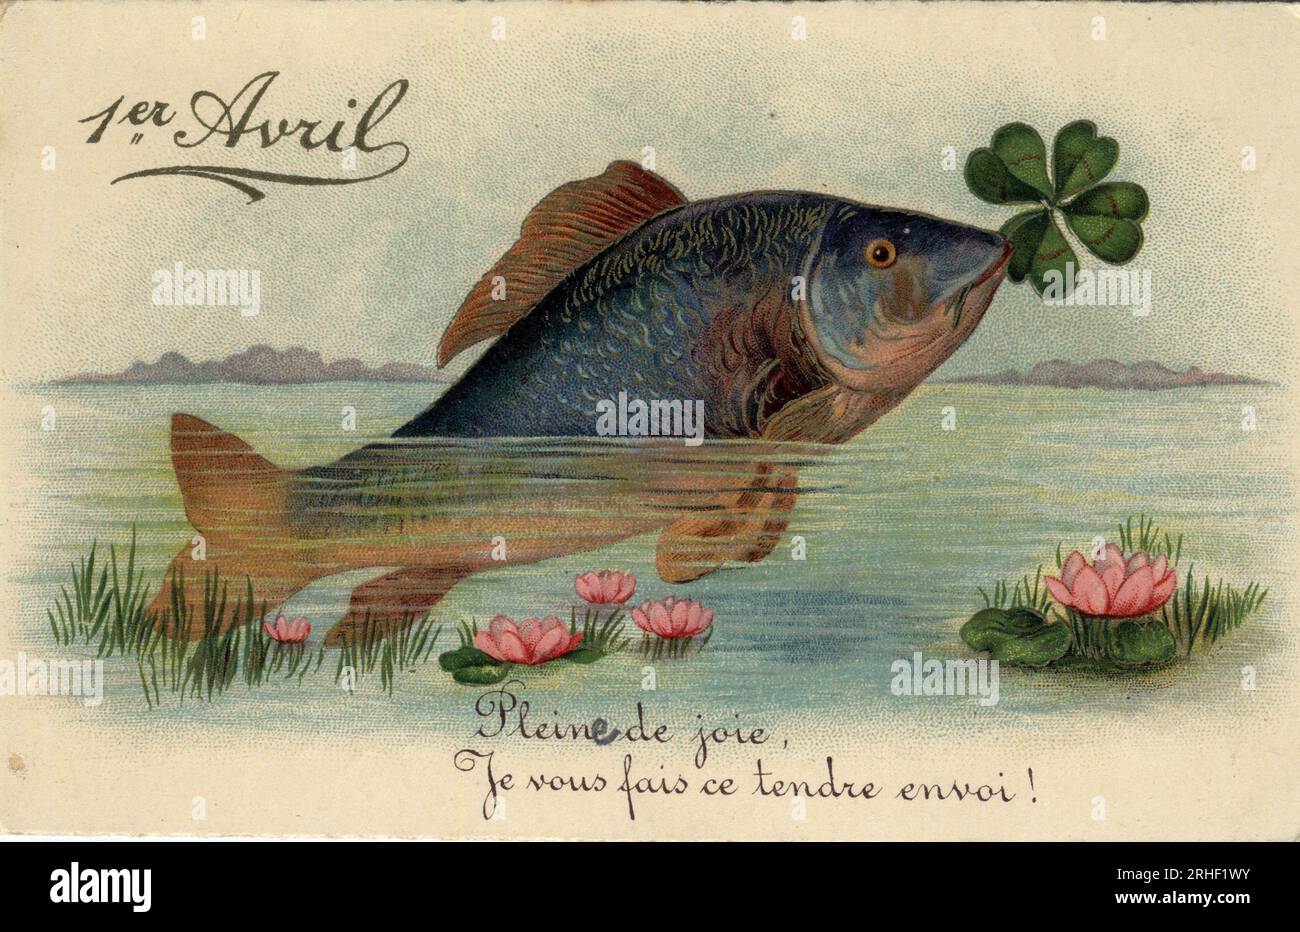 Carte de voeux pour le 1er avril : poisson avec un trefle a quatre feuilles - Carte postale fin 19eme-20eme siecle Stock Photo